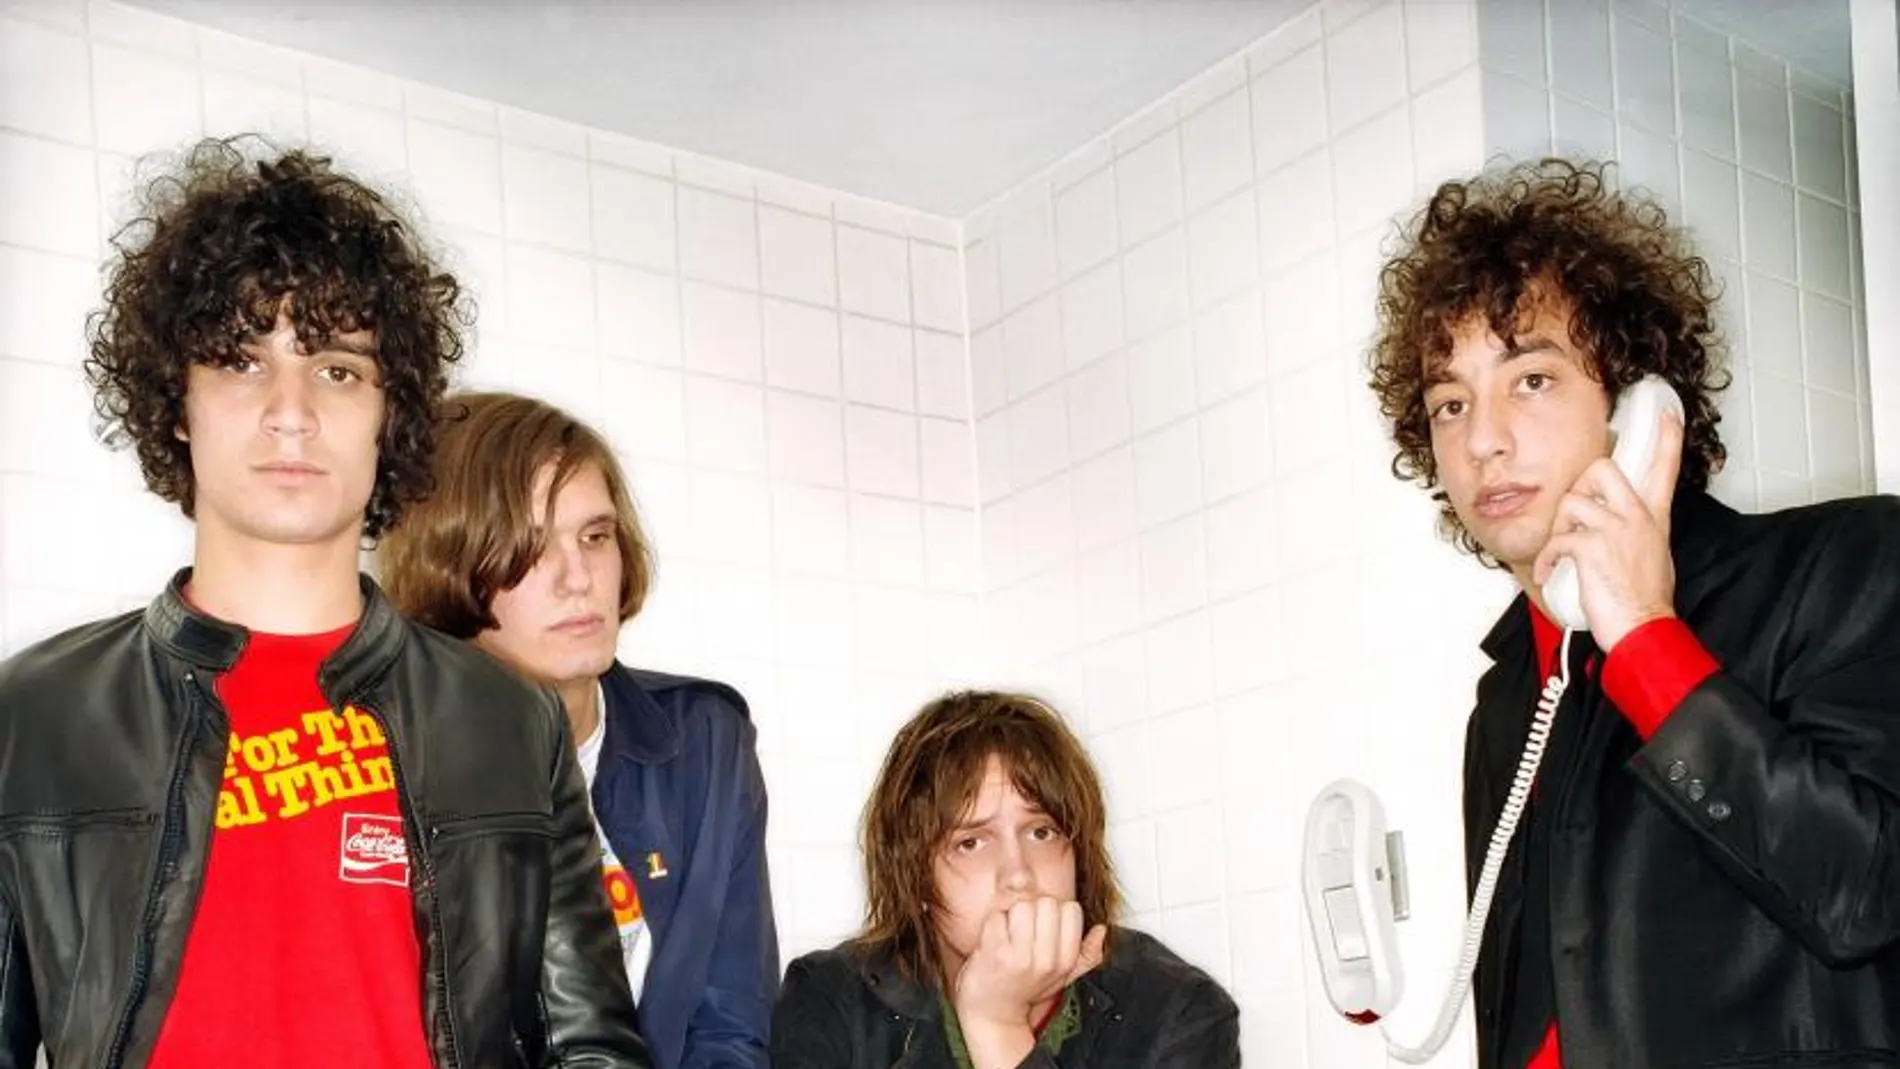 The Strokes, fotografiados en un baño, estancia a la que dedicaron una canción, «Meet me in the bathroom», por favorecer la socialización